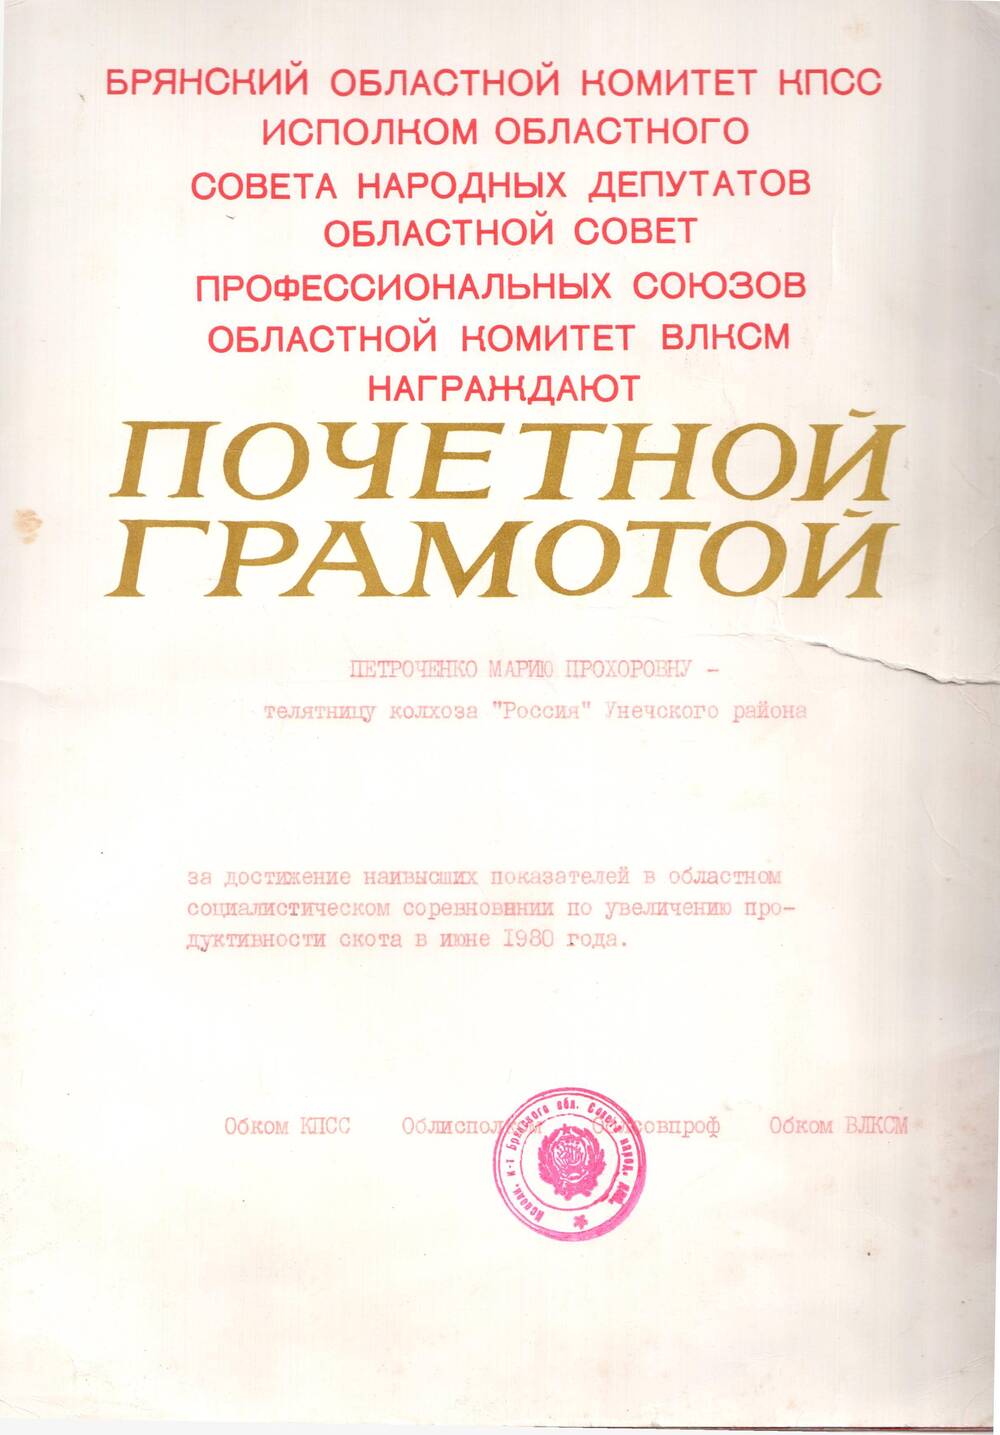 Почётная грамота М.П. Петроченко за достижение наивысших показателей в областном соцсоревновании по увеличению продуктивности скота,1980 г